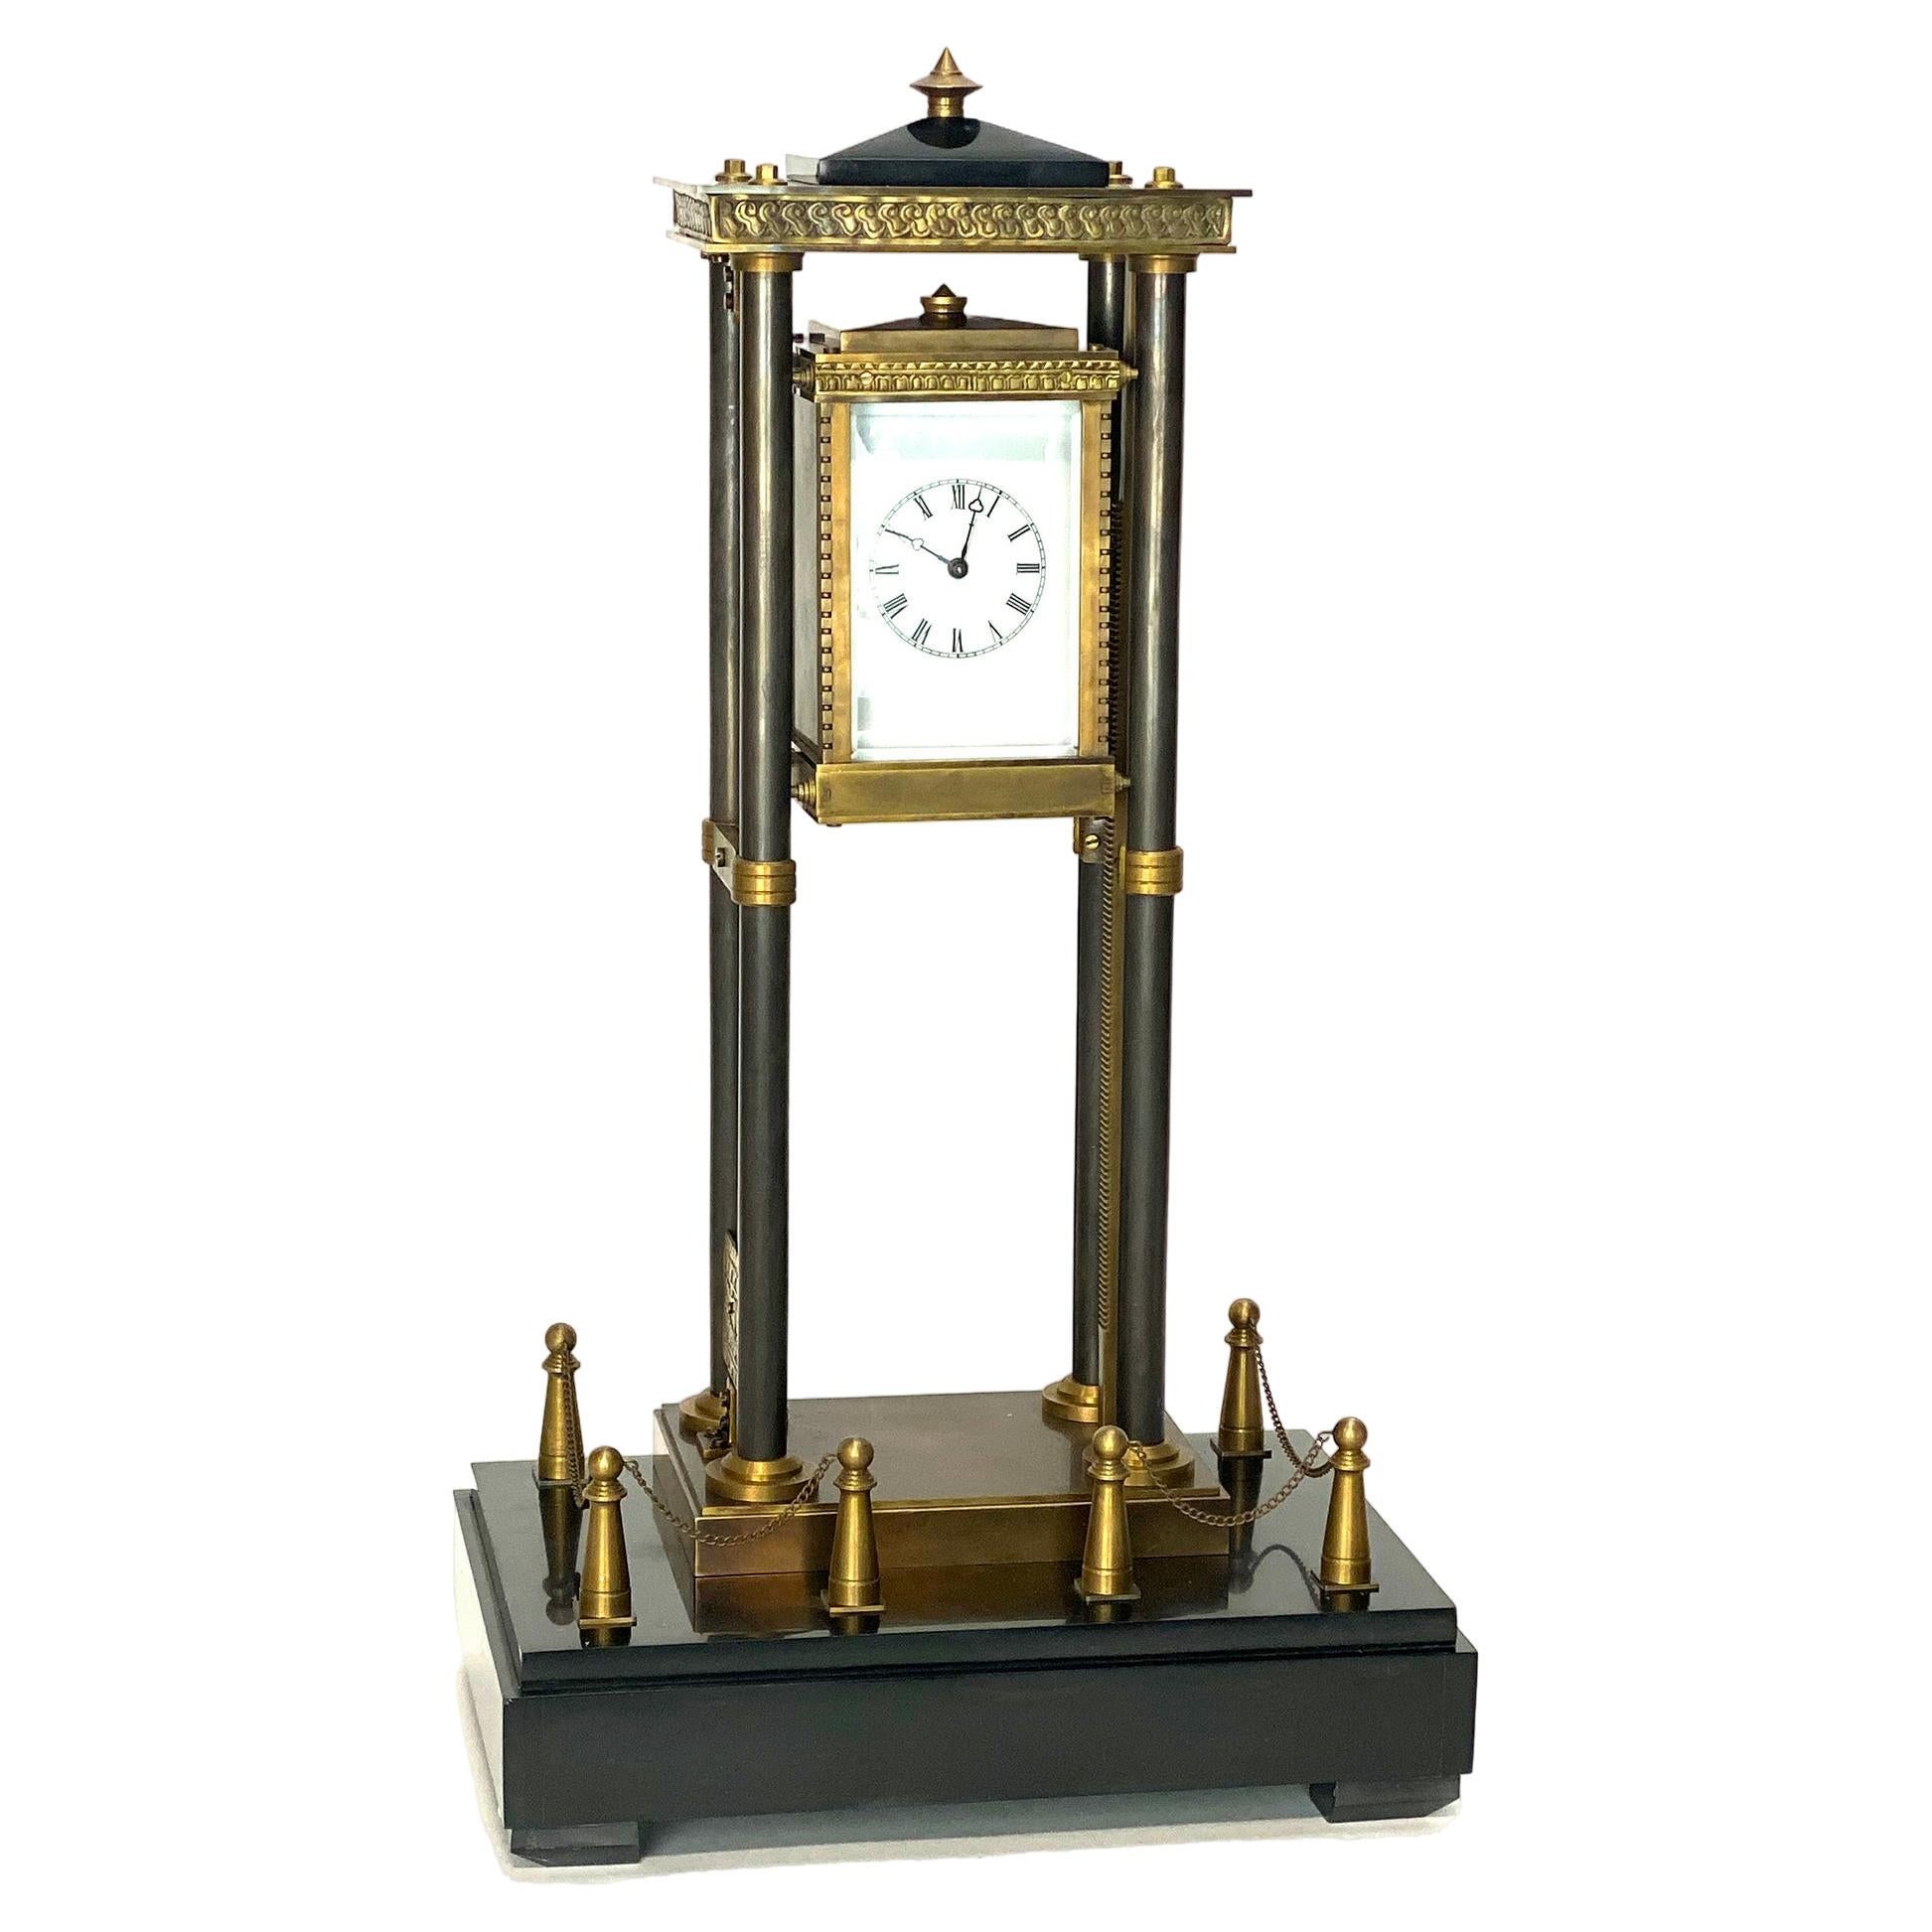 Horloge industrielle d'ascenseur de style français en bronze, axée sur la gravité